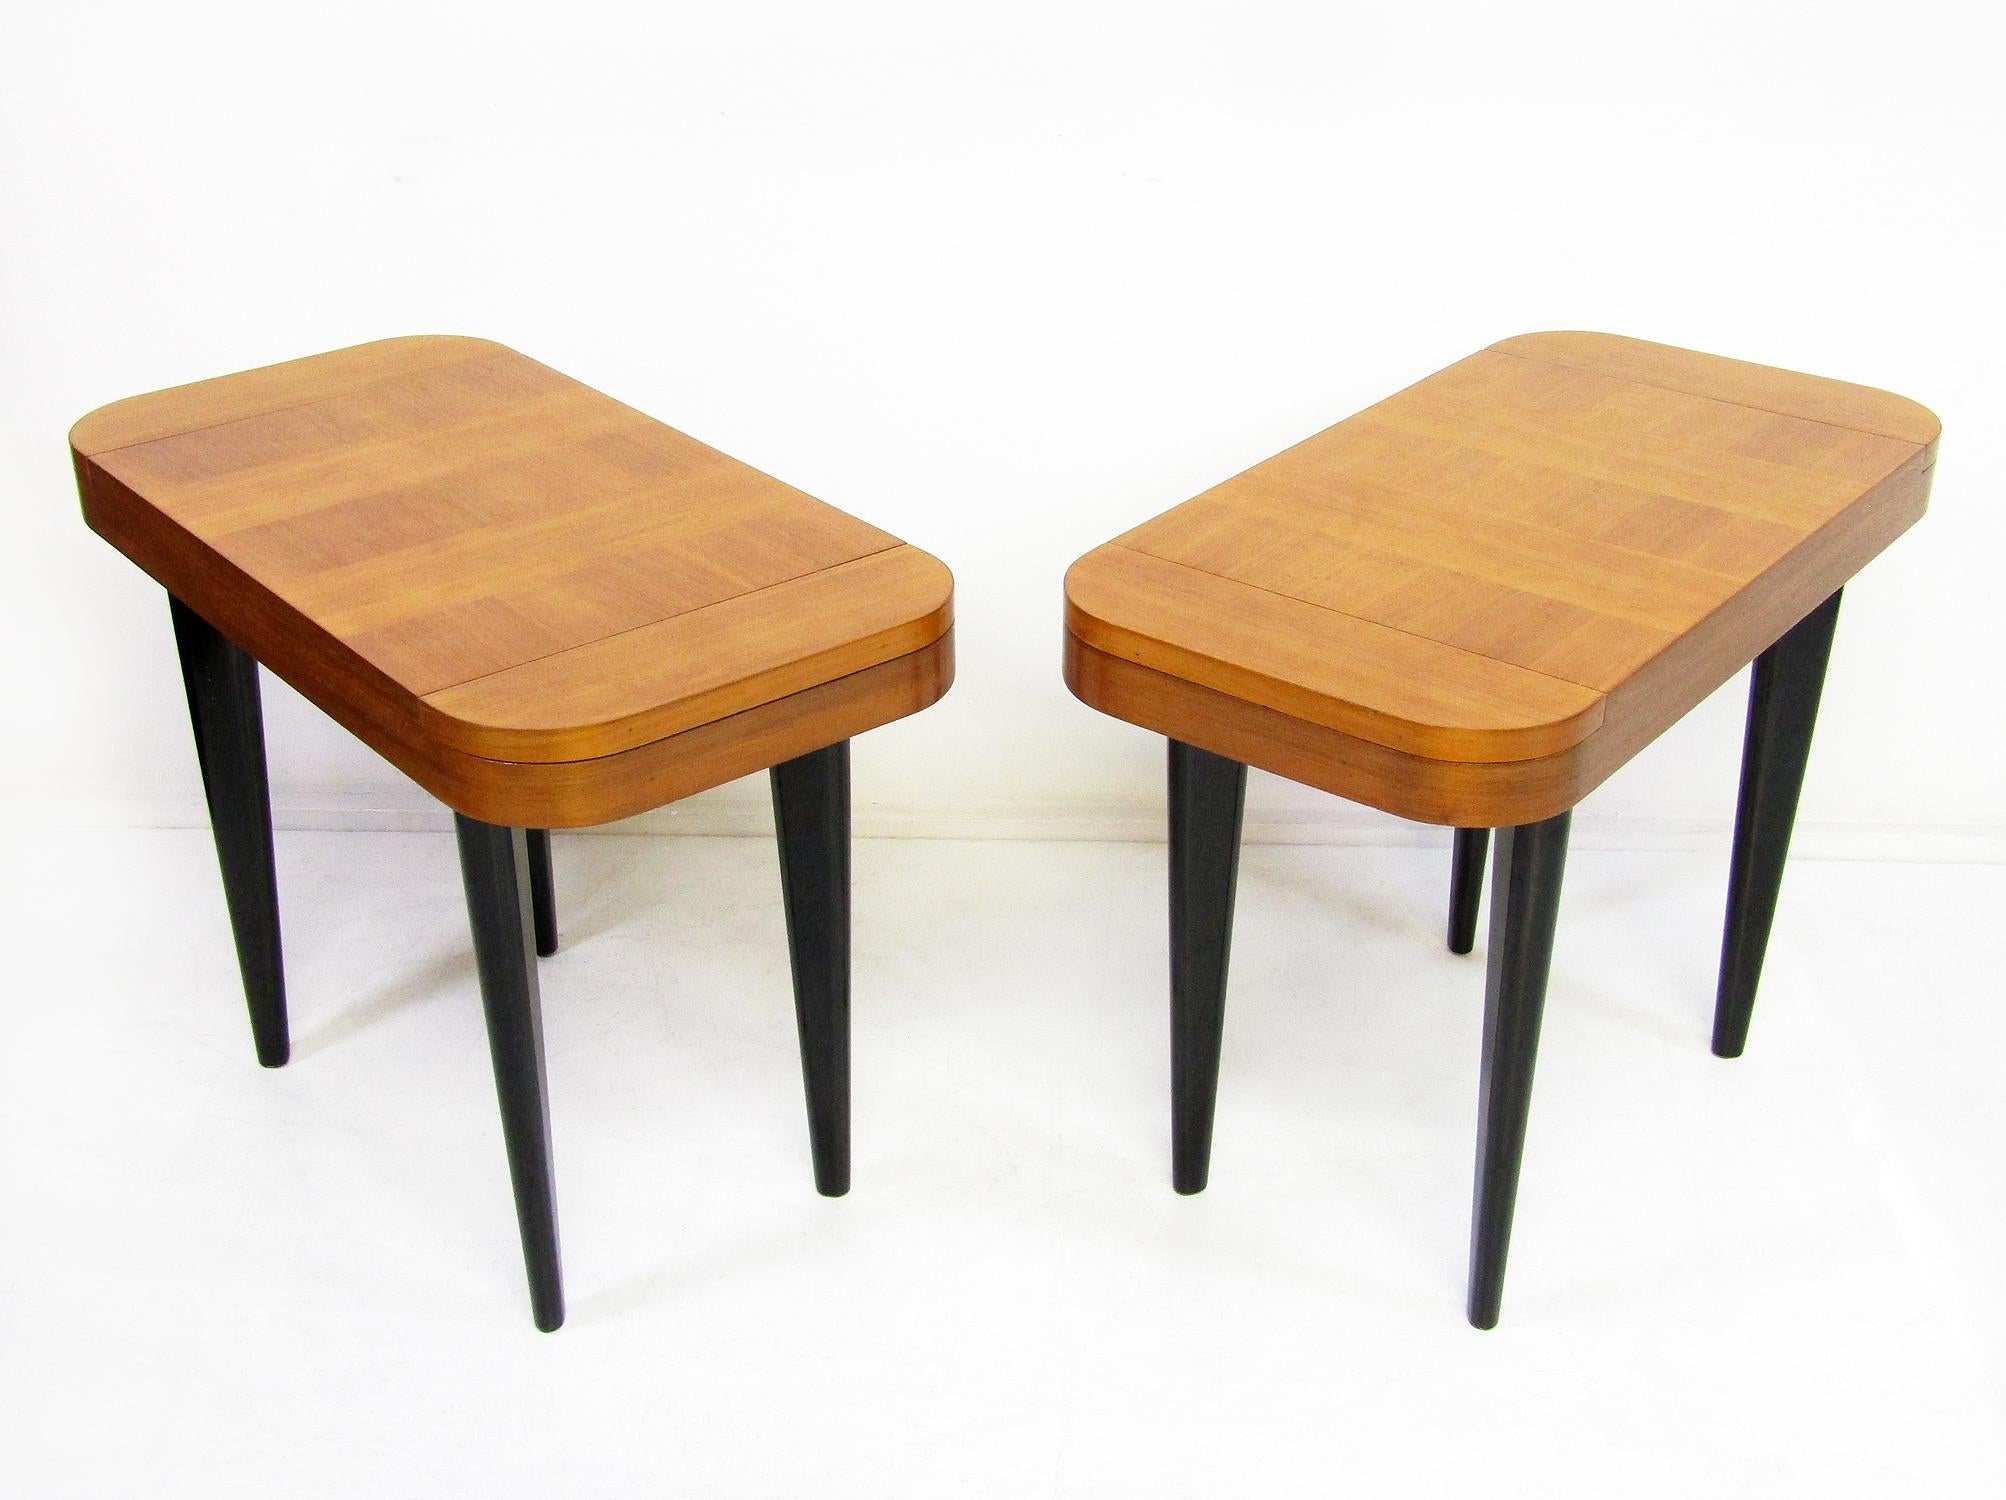 Ein Paar Art Deco Beistelltische oder Nachttische von Gilbert Rohde für Herman Miller, um 1940.

Jeder Tisch ist aus markantem, kreuzverleimtem Paldao-Holz auf ebonisierten Beinen gefertigt und verfügt über zwei diskrete Ablagefächer mit Deckel